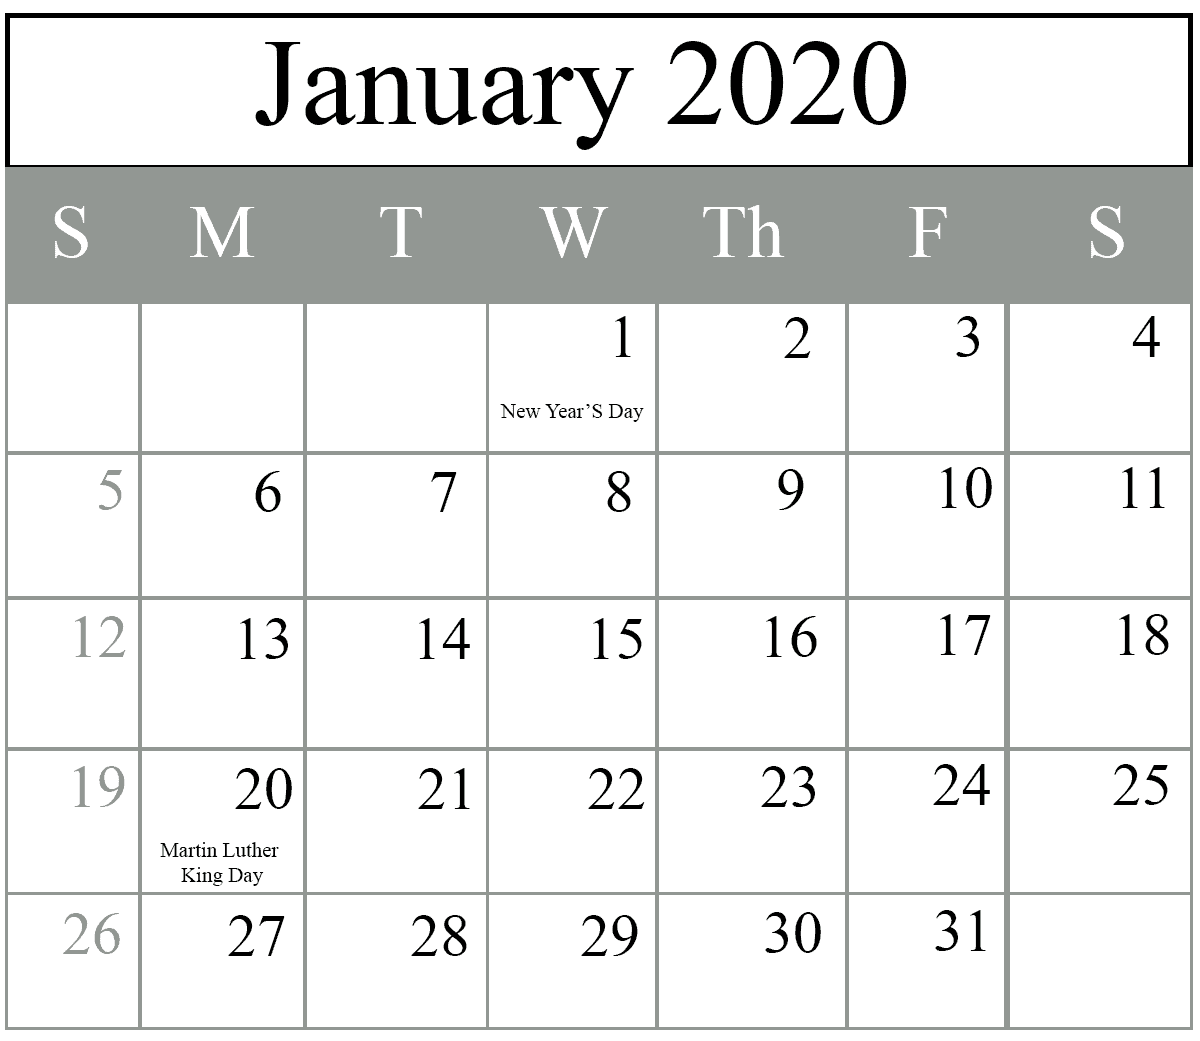 January Schedule Calendar, January 2020 Portrait Calendar